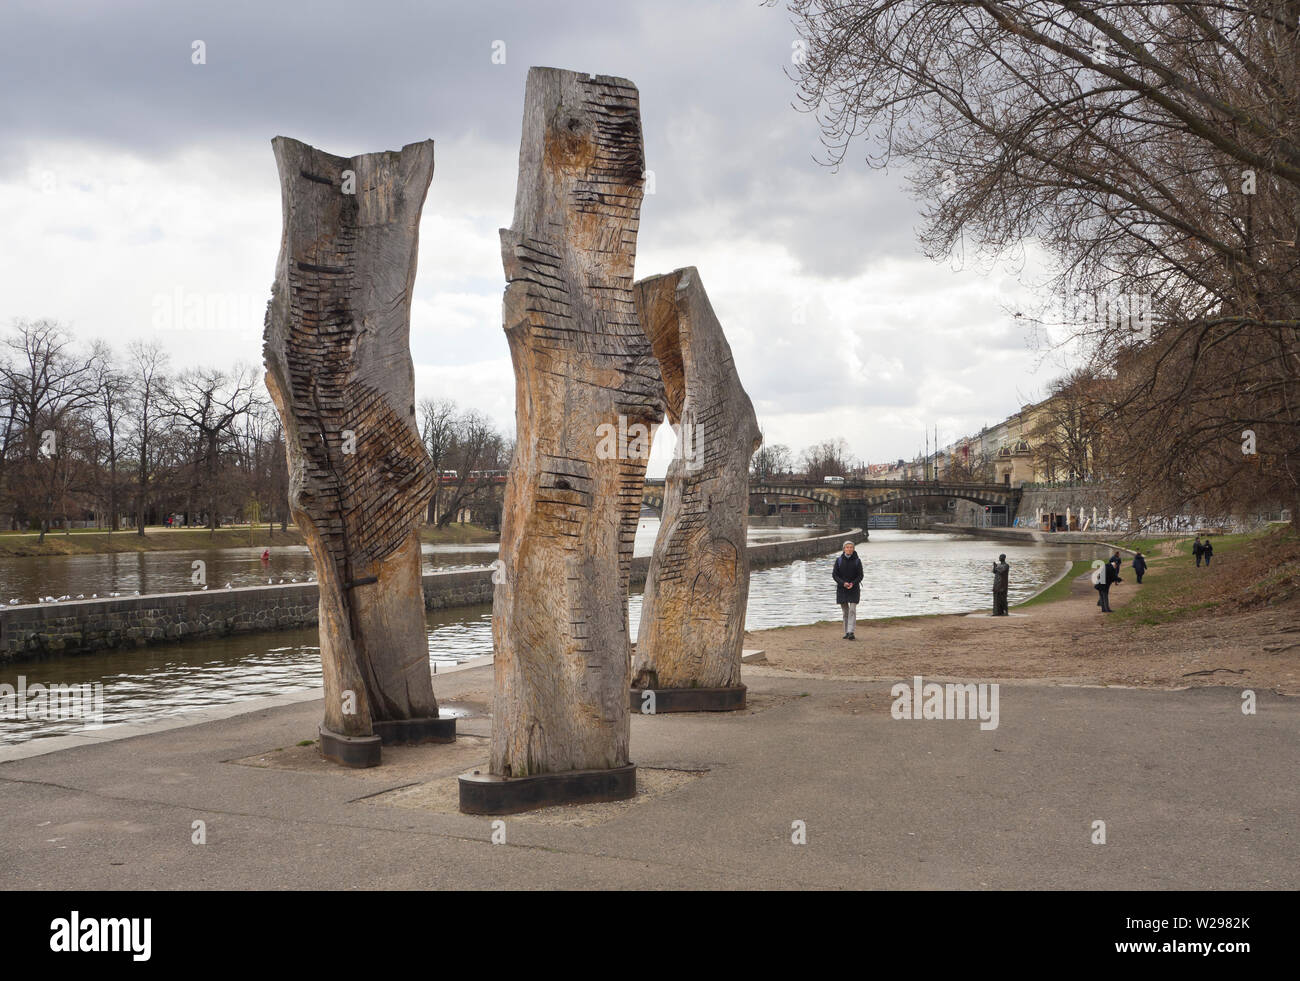 Eindrucksvolle Skulpturen aus Holz außerhalb des Museums Kampa in Malá Strana im Zentrum von Prag in der Tschechischen Republik, beherbergt eine Sammlung moderner Kunst Stockfoto